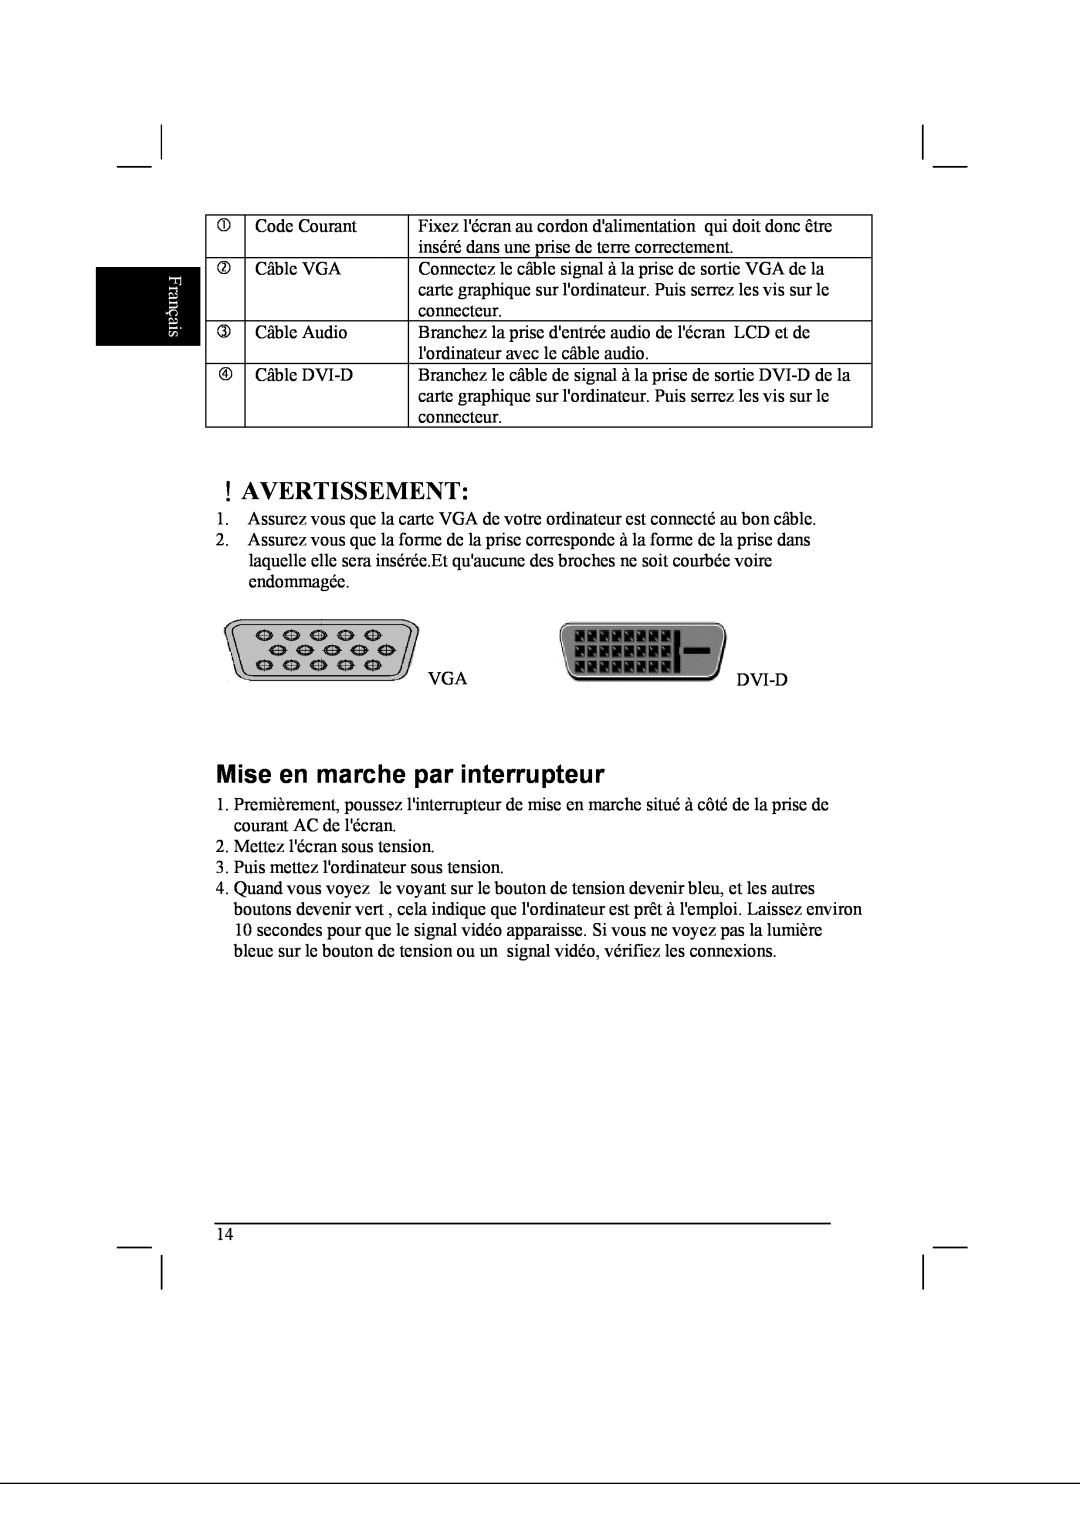 Acer AL2021 manual ！Avertissement, Mise en marche par interrupteur, Français 